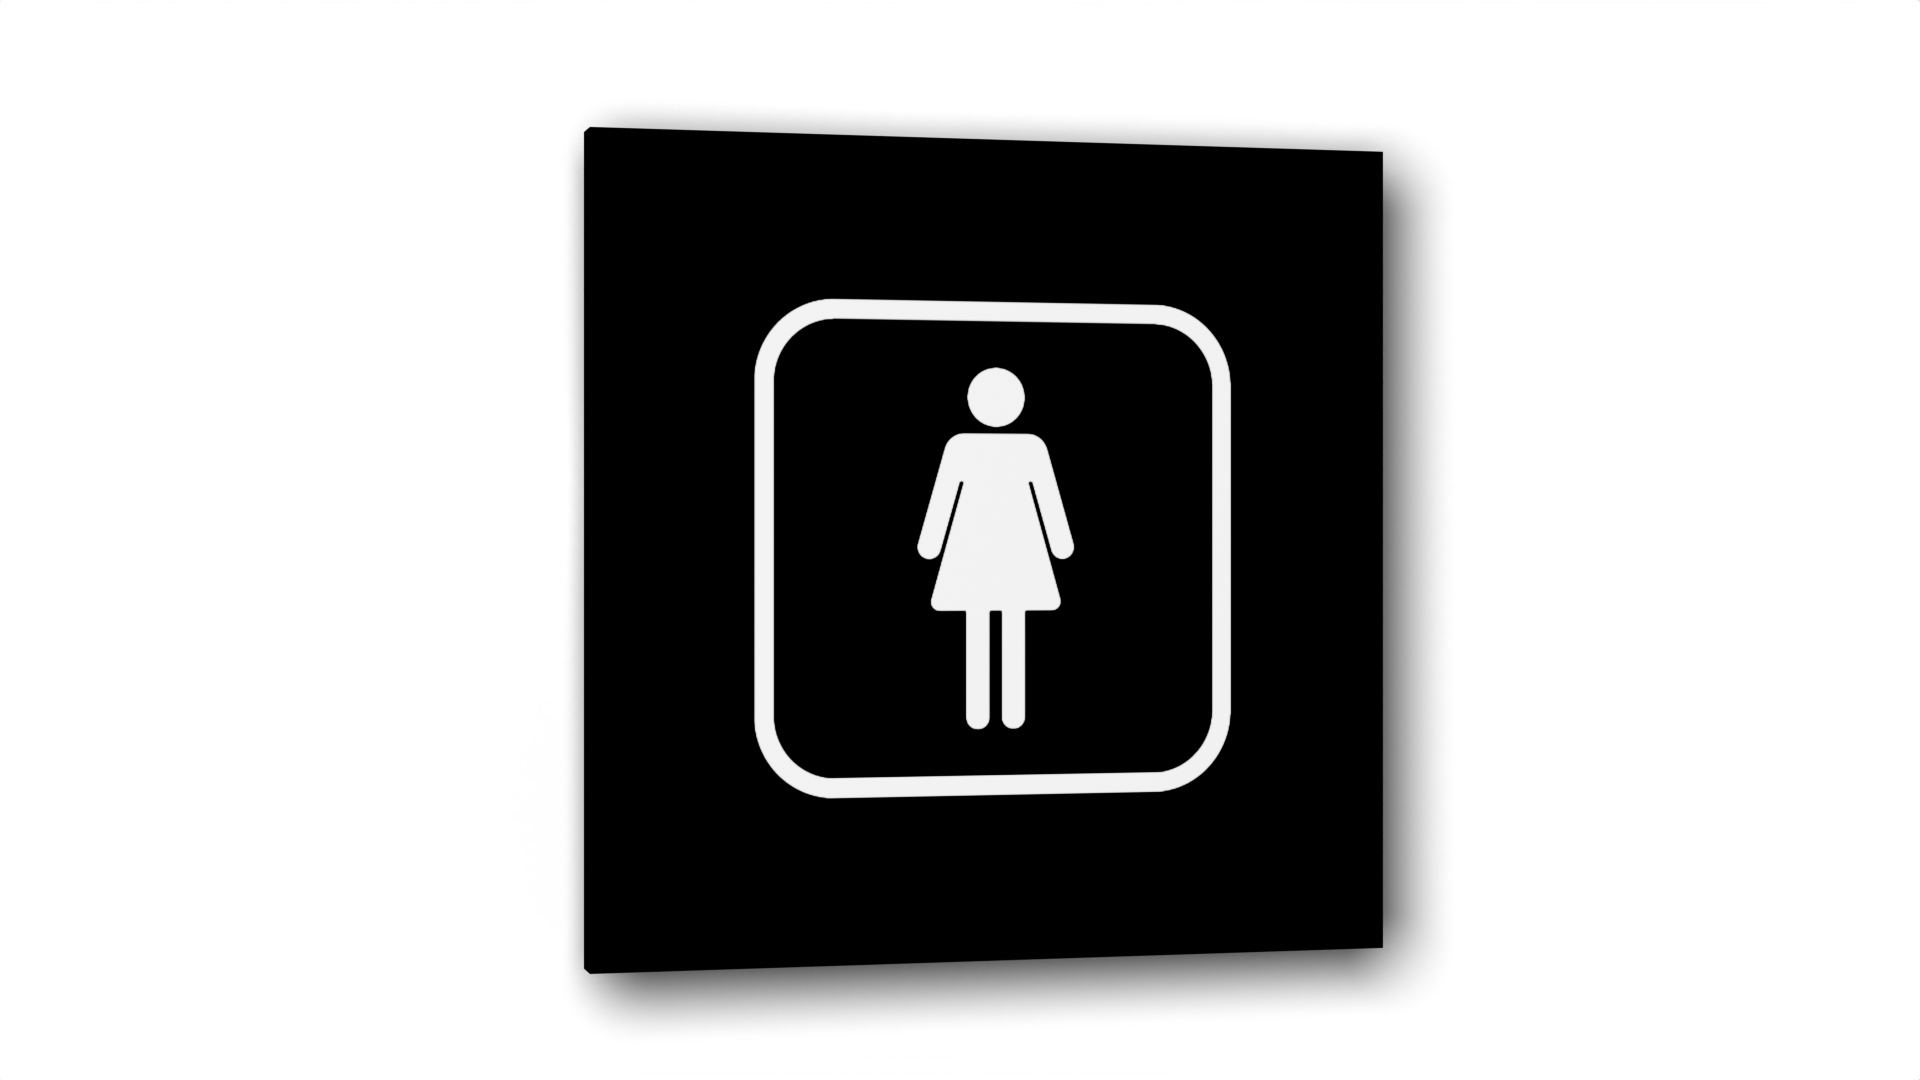 Табличка Женщина, Черная глянцевая, 10 см х 10 см